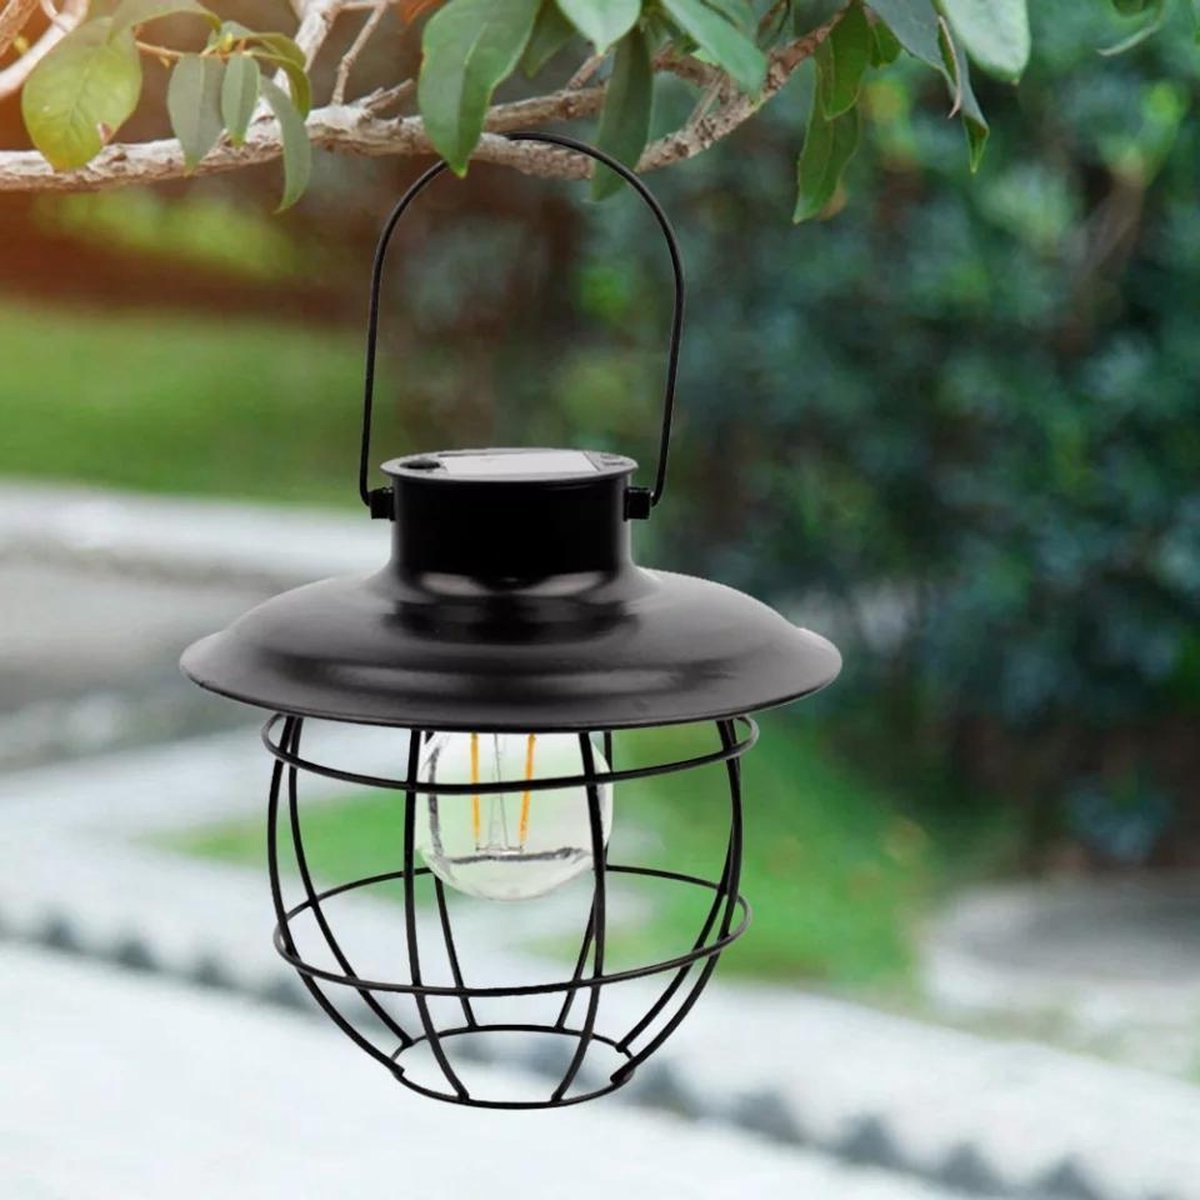 Solar Hanglamp Classic Egg Shaped - Gaat automatisch aan in het donker - Water/Weerbestendig - Solar tuinverlichting op zonne-energie